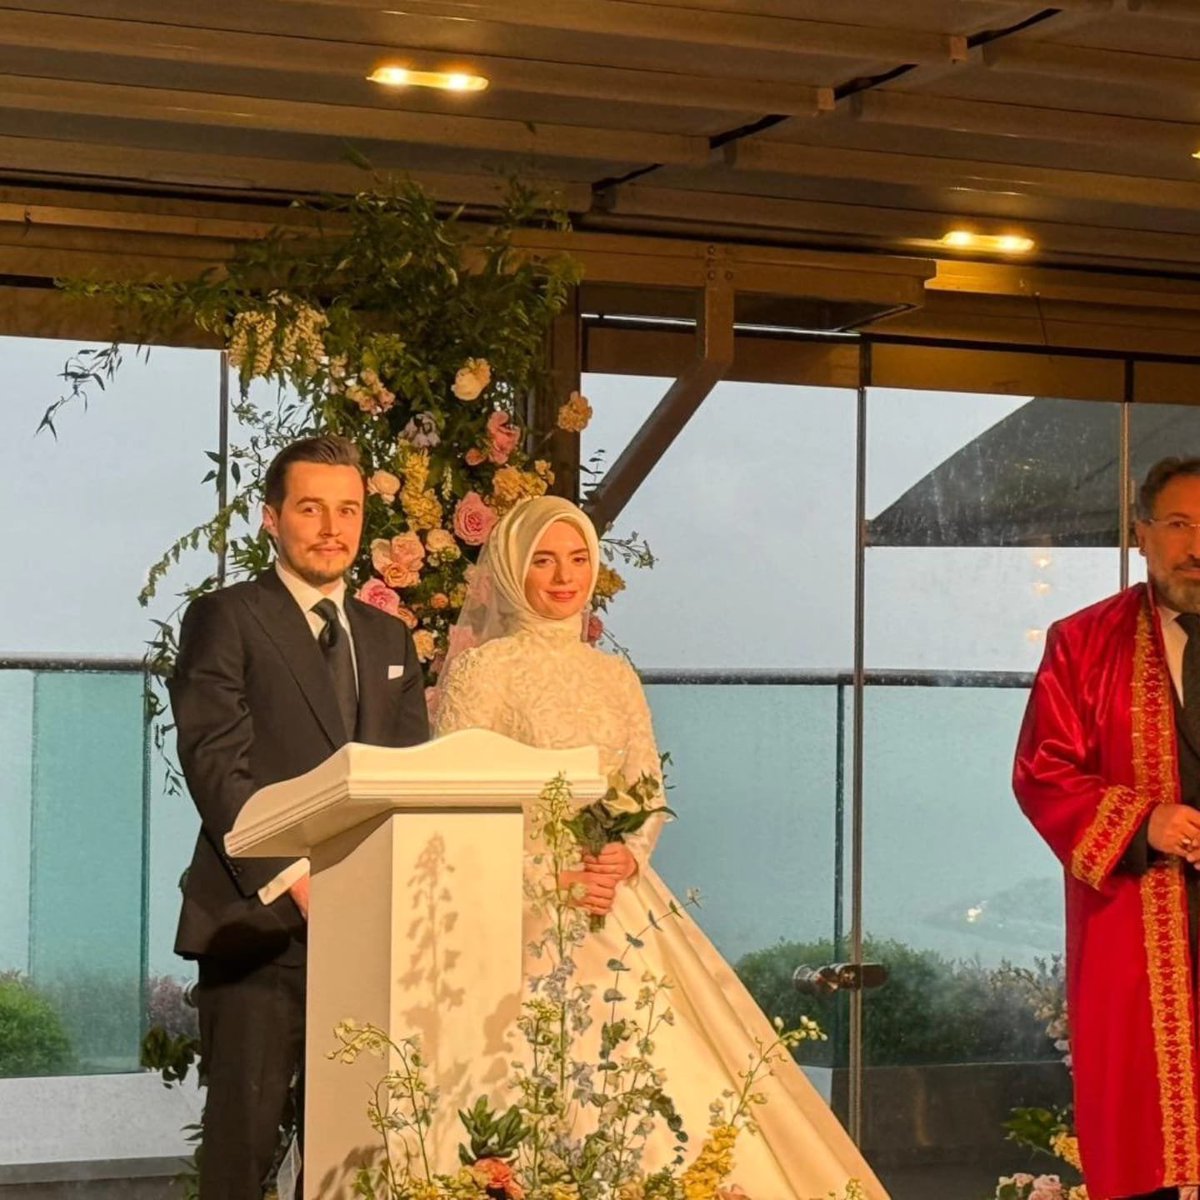 29. TBMM Başkanımız Sayın Mustafa Şentop ‘un kızı Seniha Begüm ile Yunus Emre’nin nikah törenine katıldım. Sayın Başkanımızı ve kıymetli ailelerini tebrik ediyor genç çifte iki cihân saadeti diliyorum. 💐 @MustafaSentop